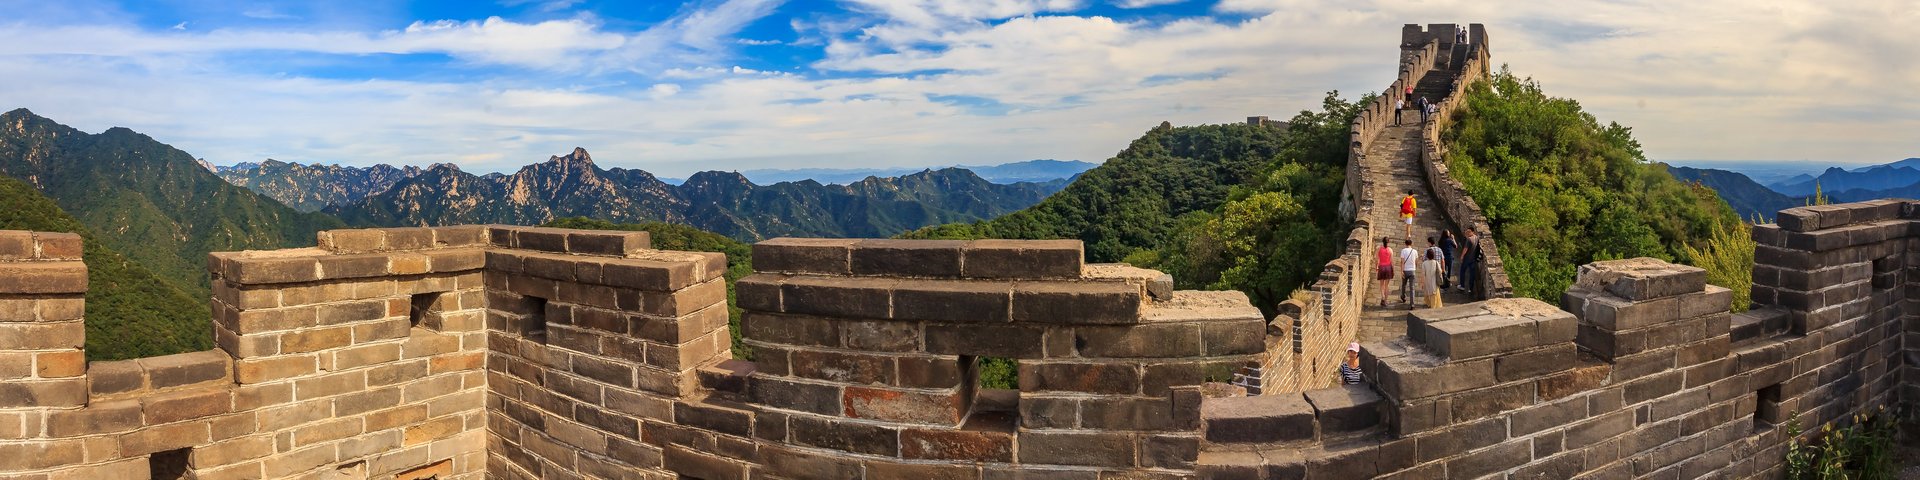 Blick über einen Abschnitt der Chinesischen Mauer